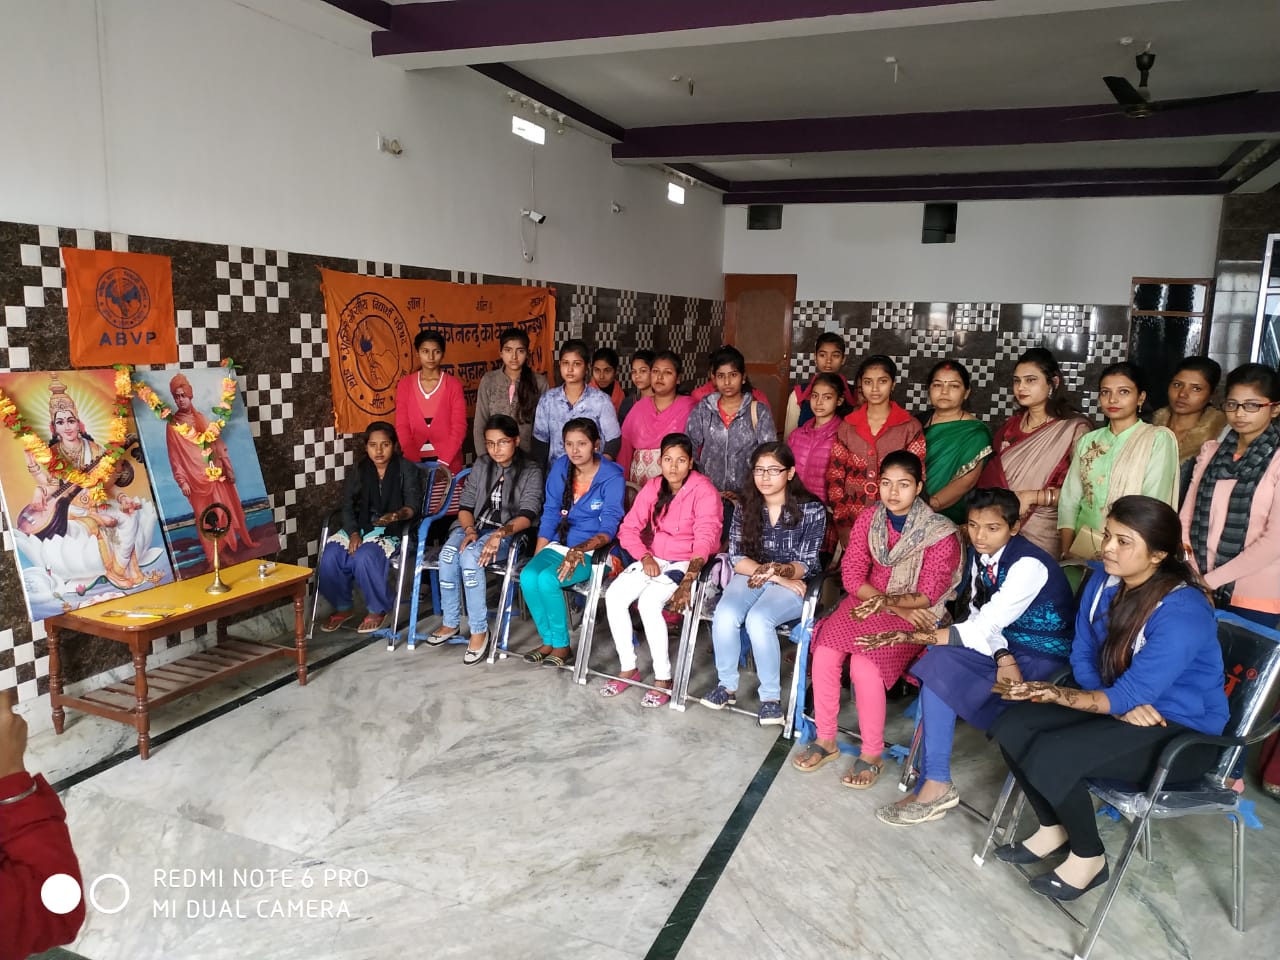 विवेकानन्द युवा सप्ताह के अवसर पर मेहँदी प्रतियोगिता का आयोजन,युवतियों ने लिया हिस्सा